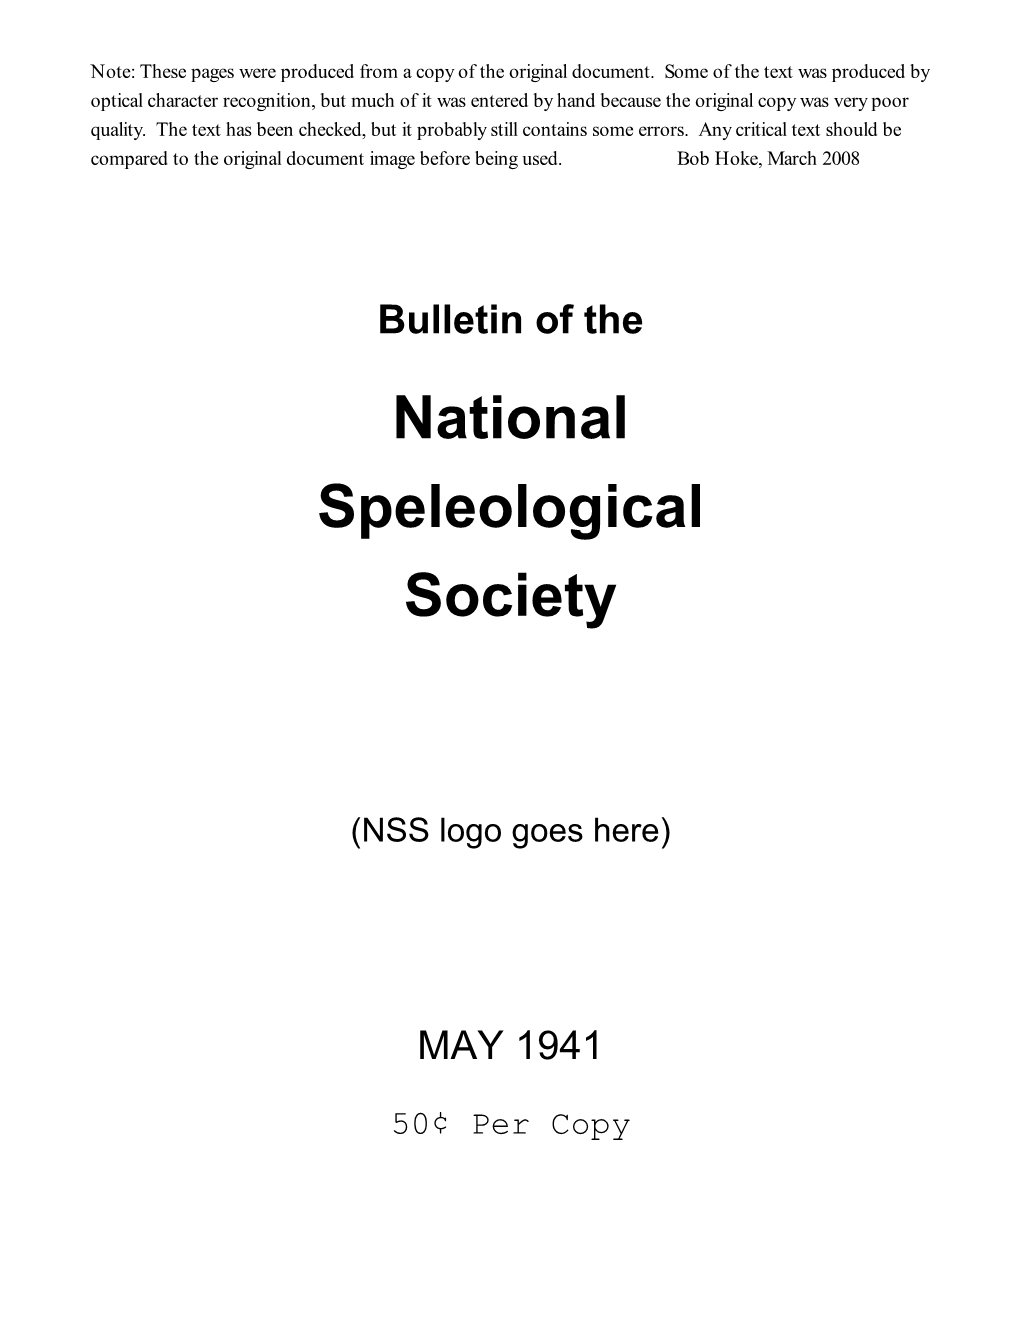 Bulletin of the National Speleological